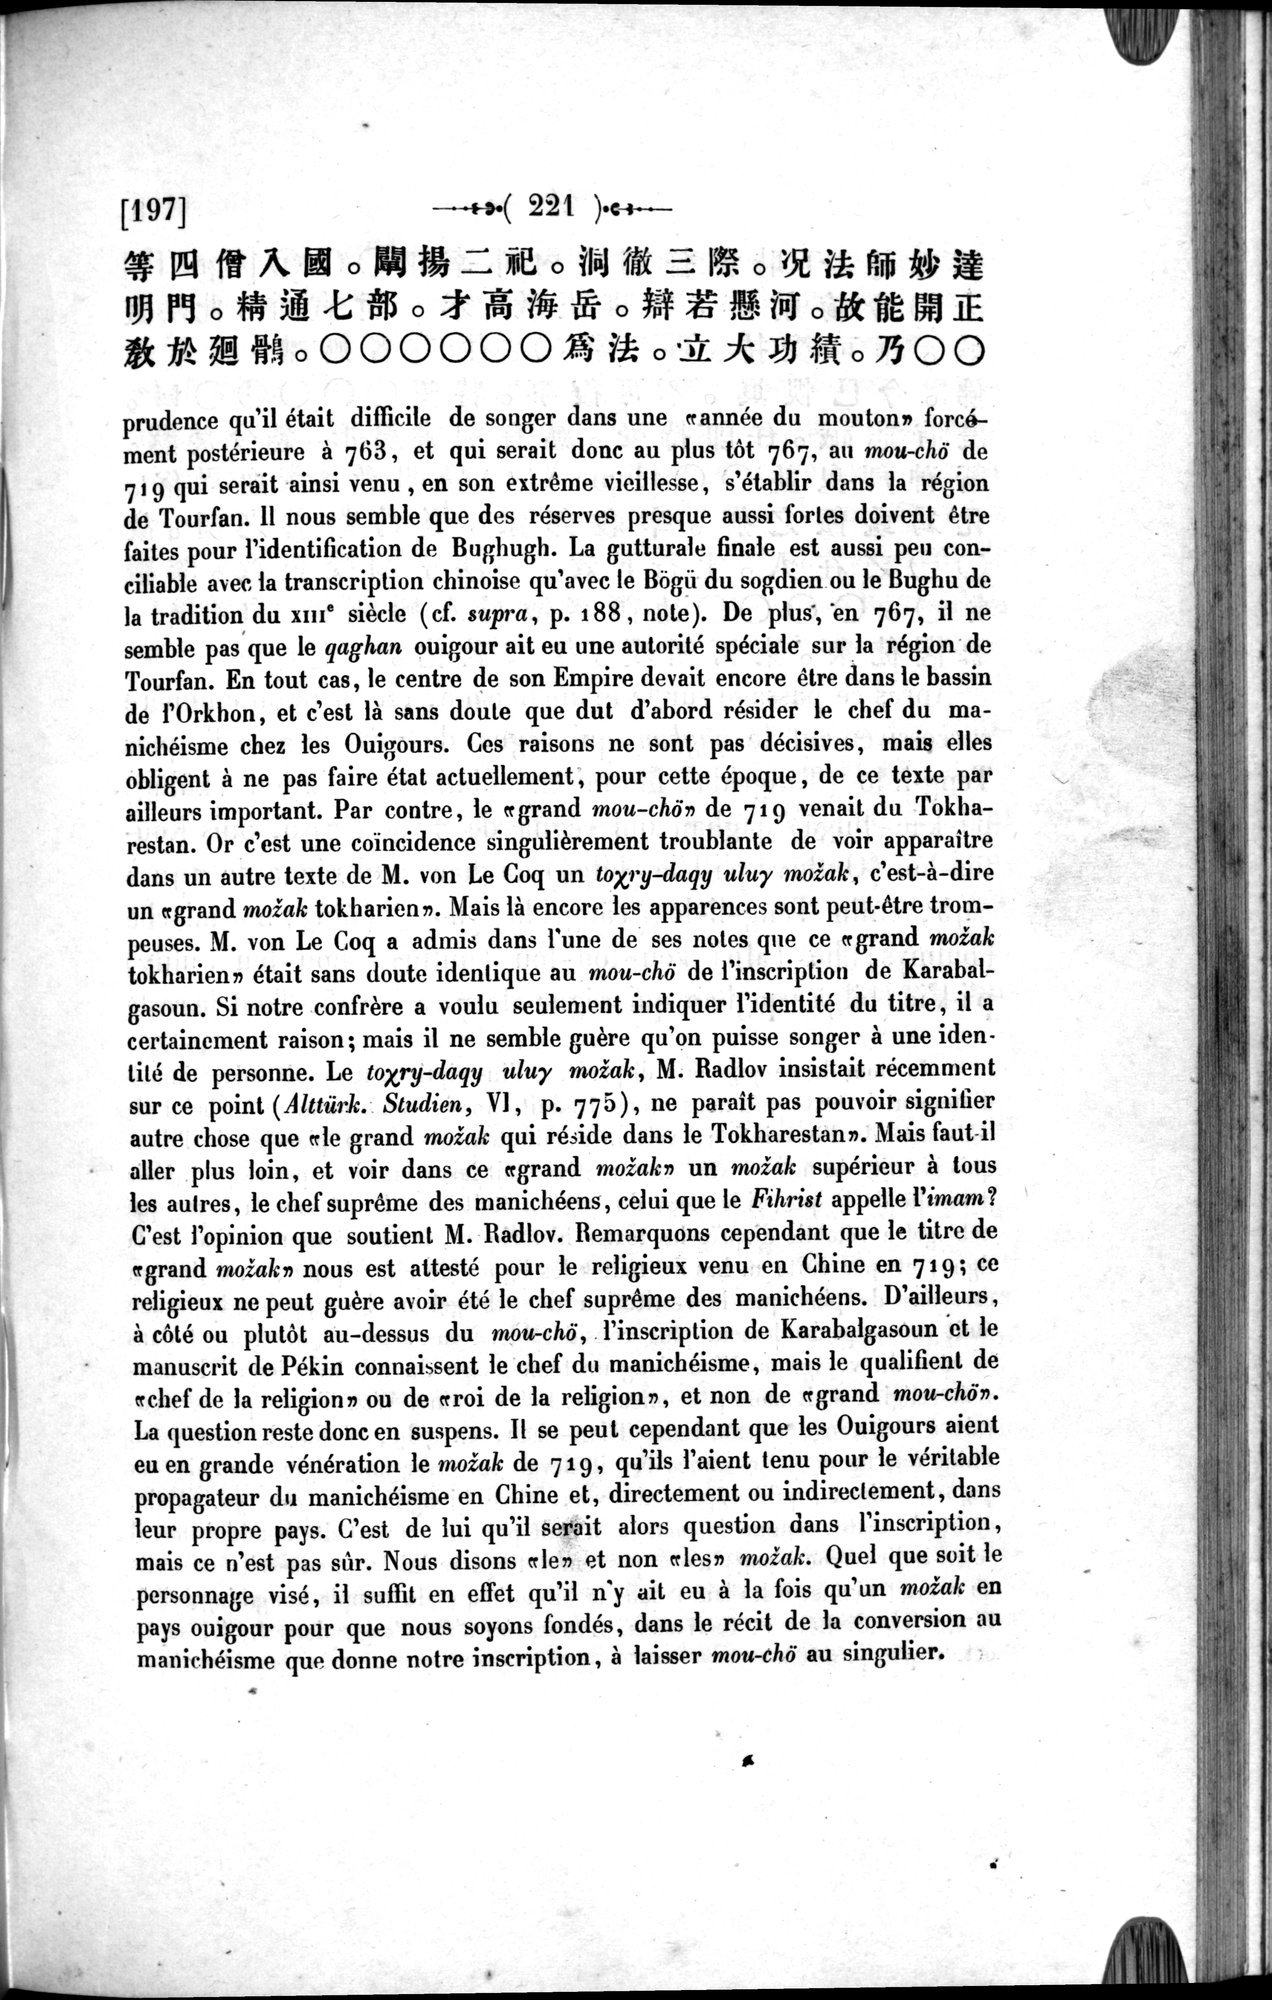 Un traité manichéen retrouvé en Chine : vol.1 / Page 231 (Grayscale High Resolution Image)